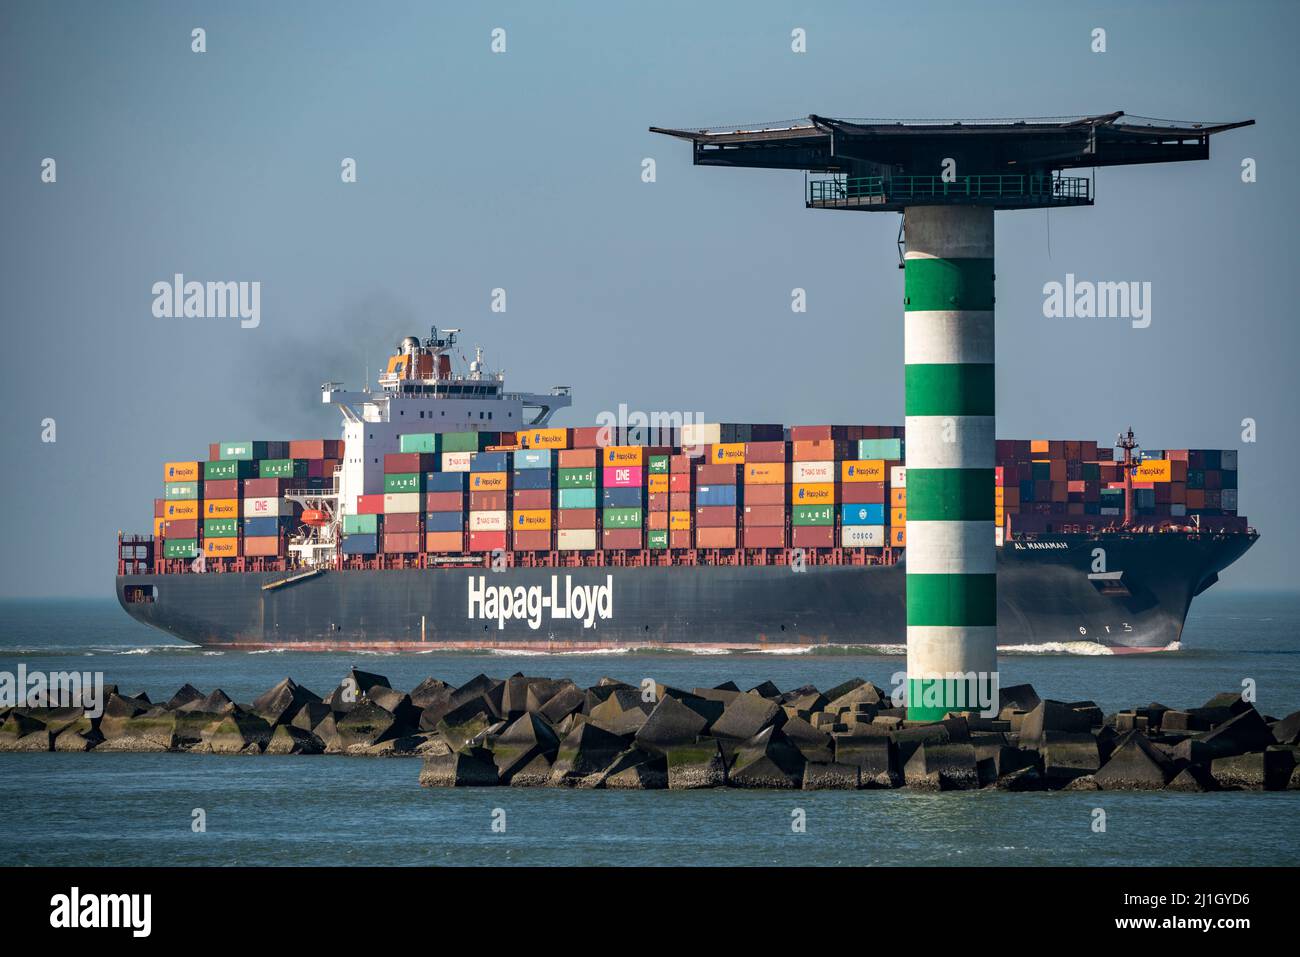 Das Containerschiff Al Manamah, im Besitz von Hapag-Lloyd, befindet sich am Hafeneingang des Tiefseehafens Maasvlakte 2, dem Seehafen von Rotterdam, Niederlande Stockfoto